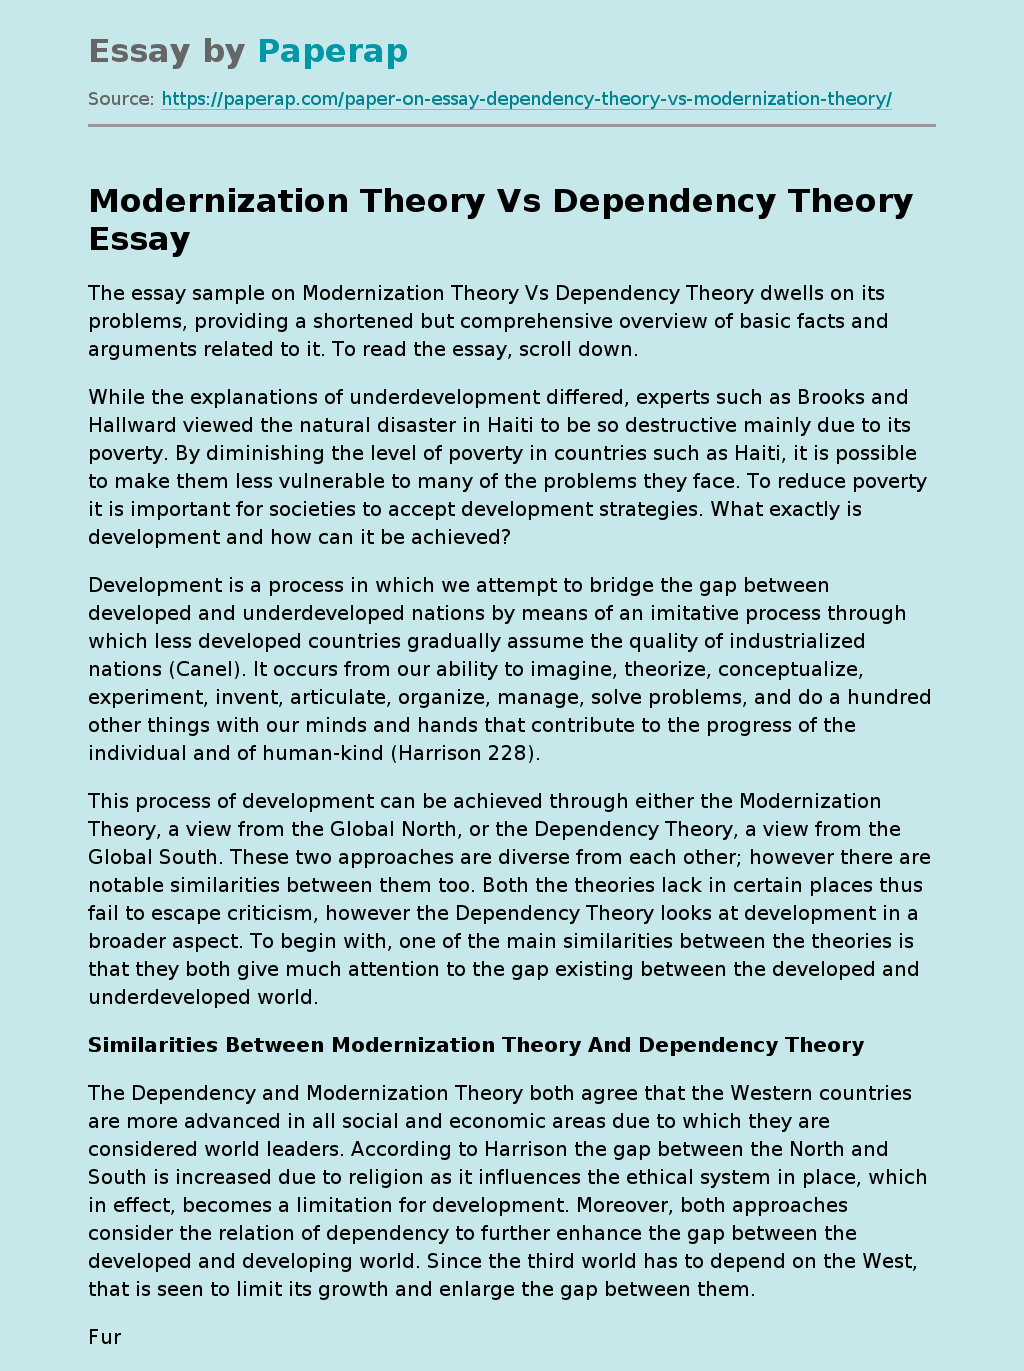 Modernization Theory Vs Dependency Theory